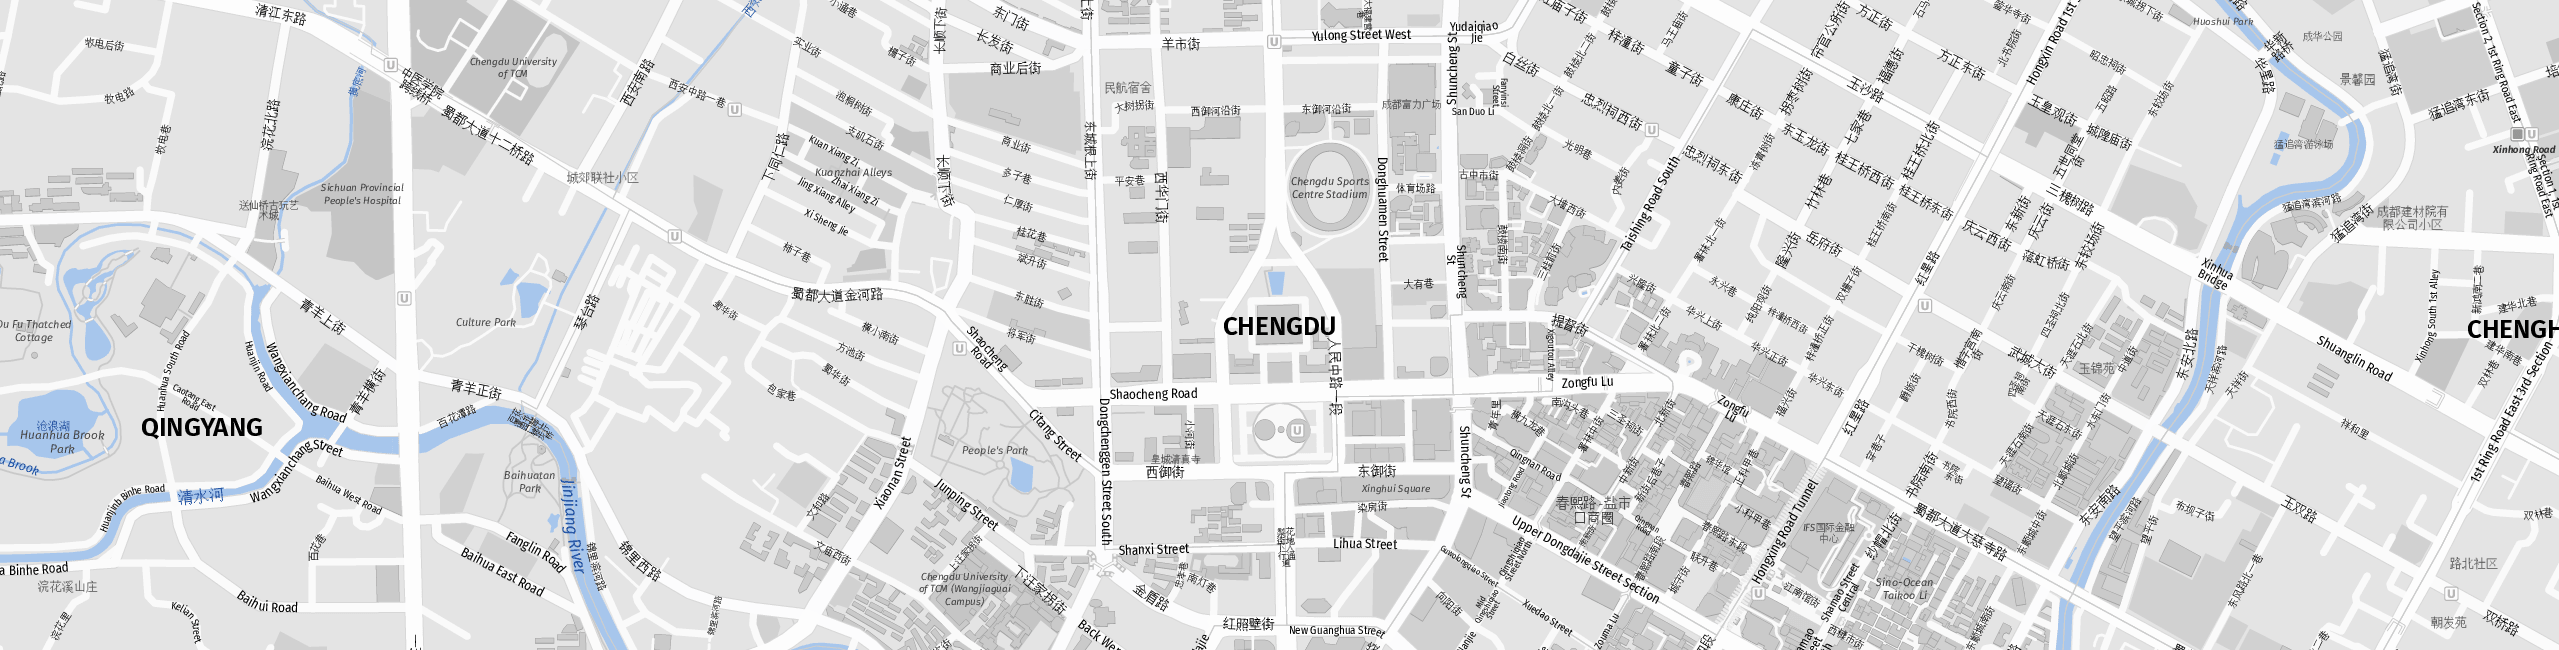 Stadtplan Chengdu zum Downloaden.